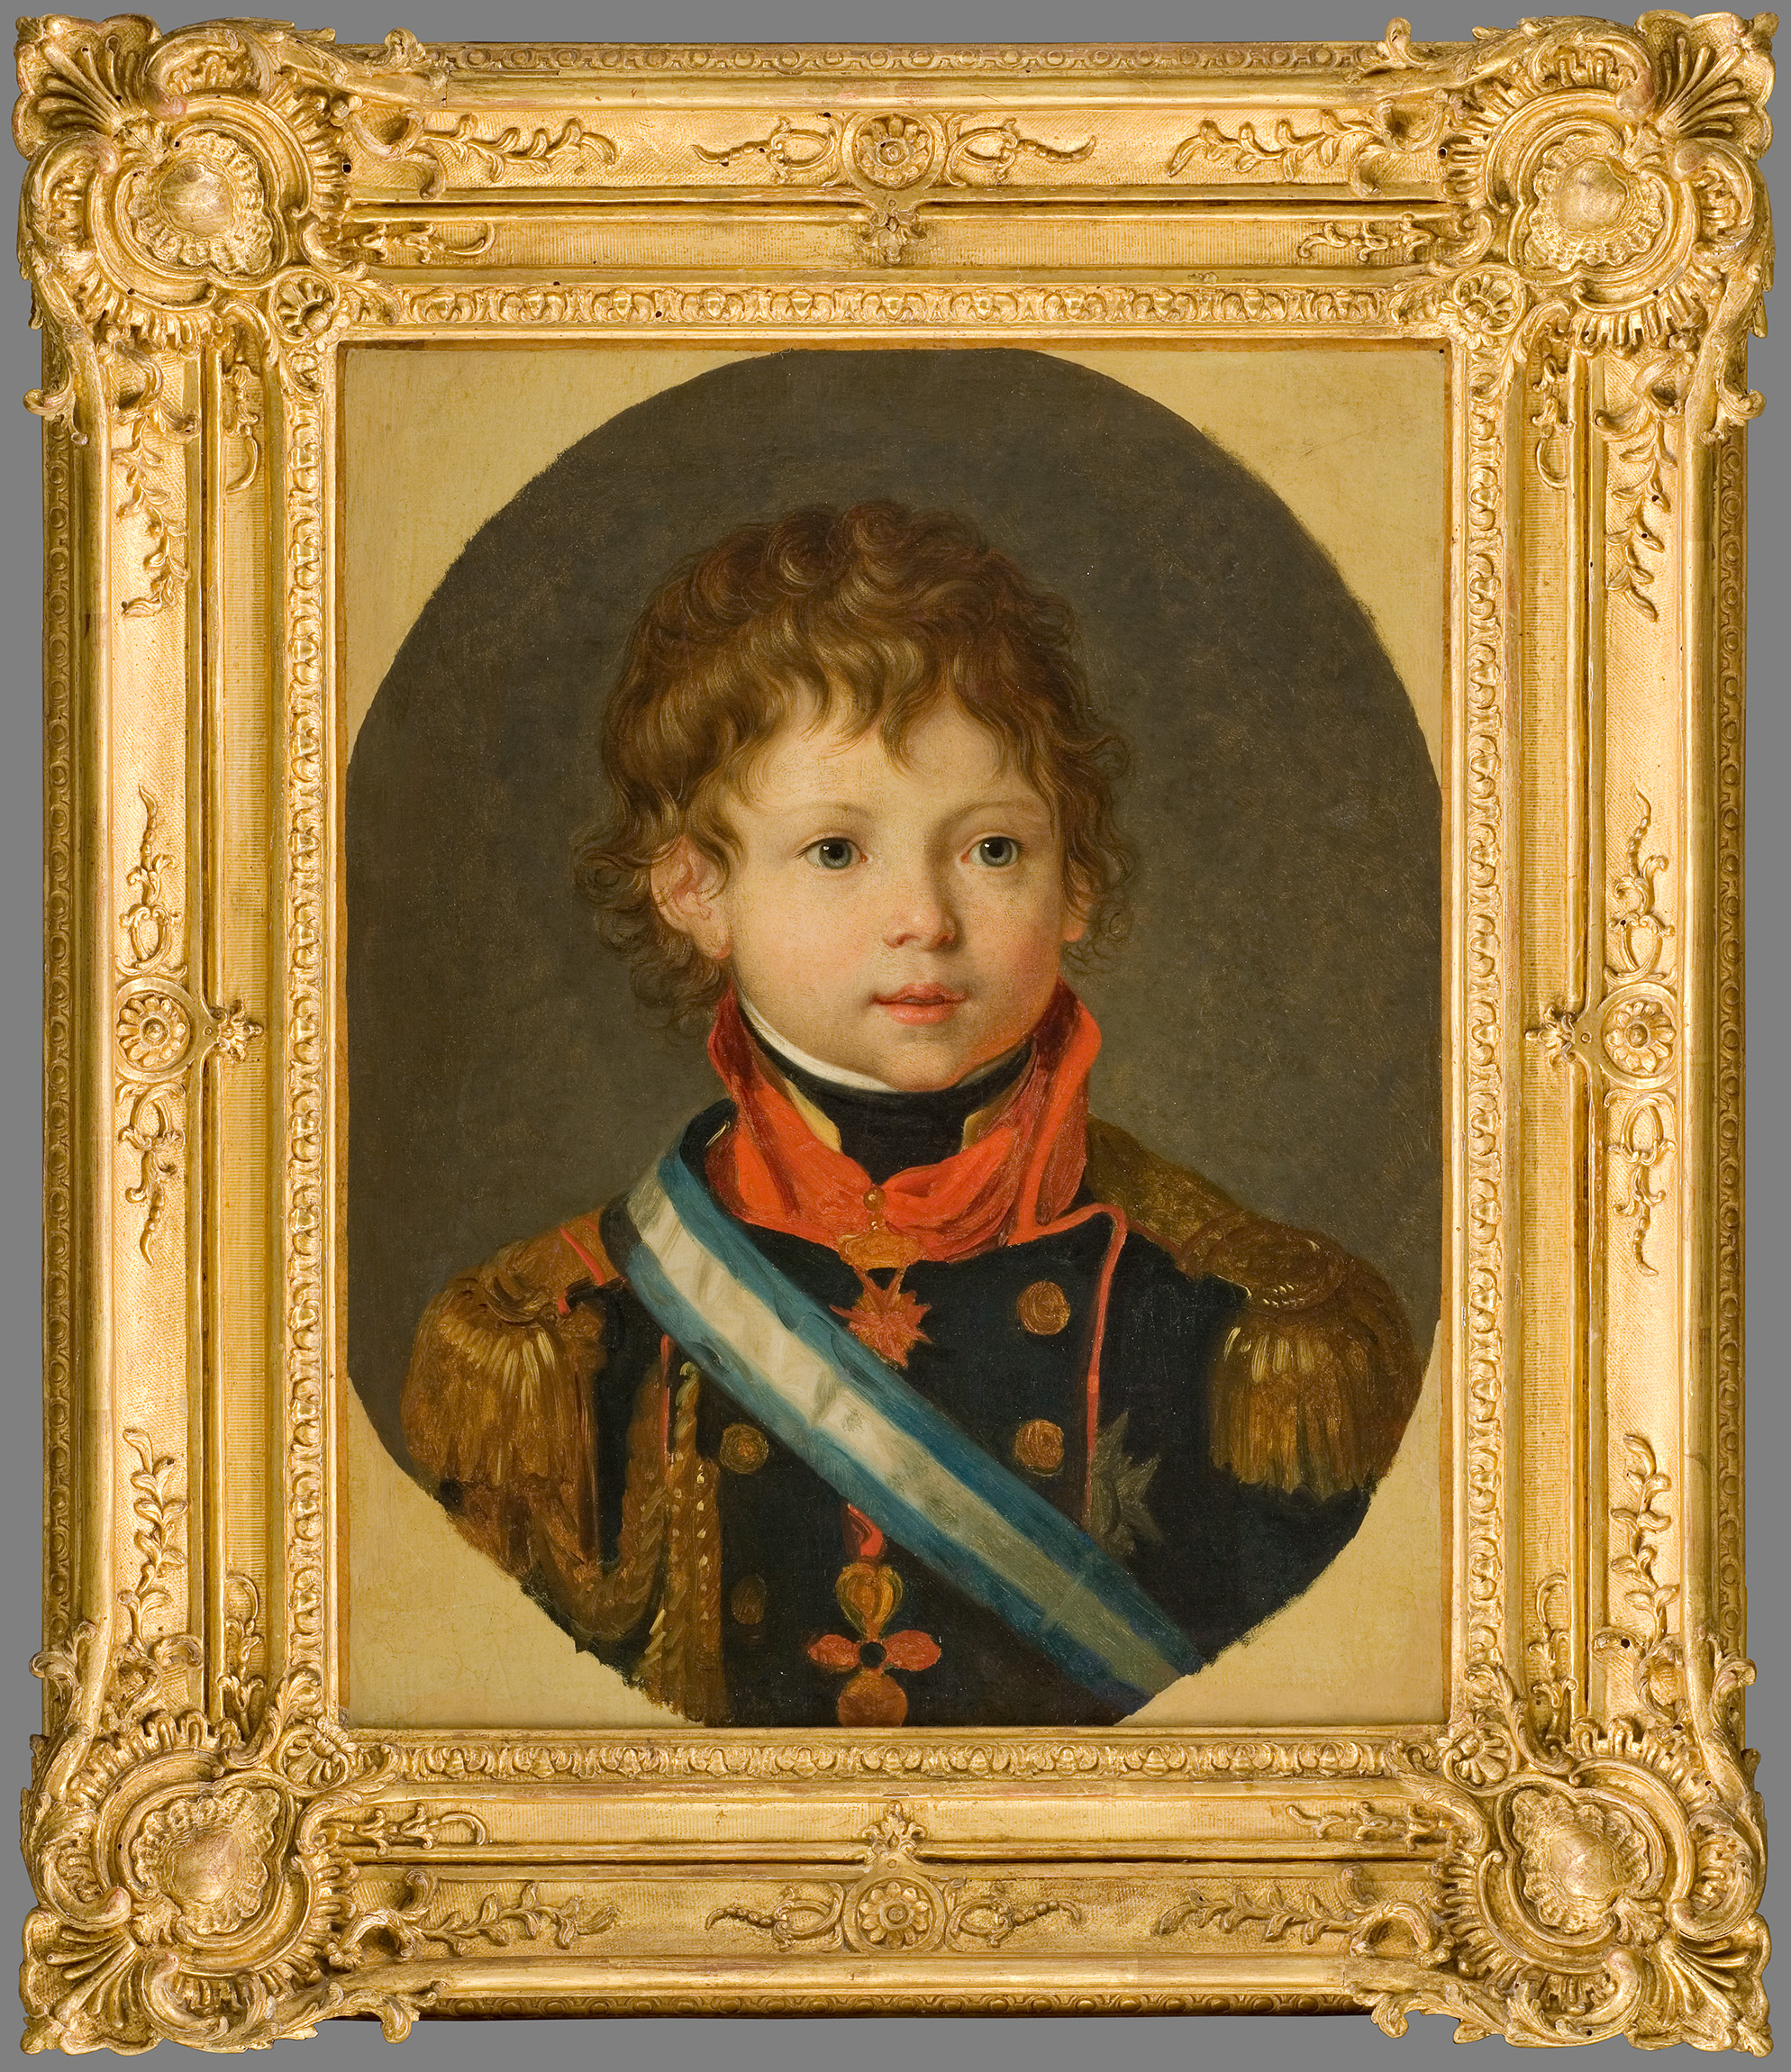 Portrait de Charles-Louis Ier, roi d'Etrurie (1799-1883)